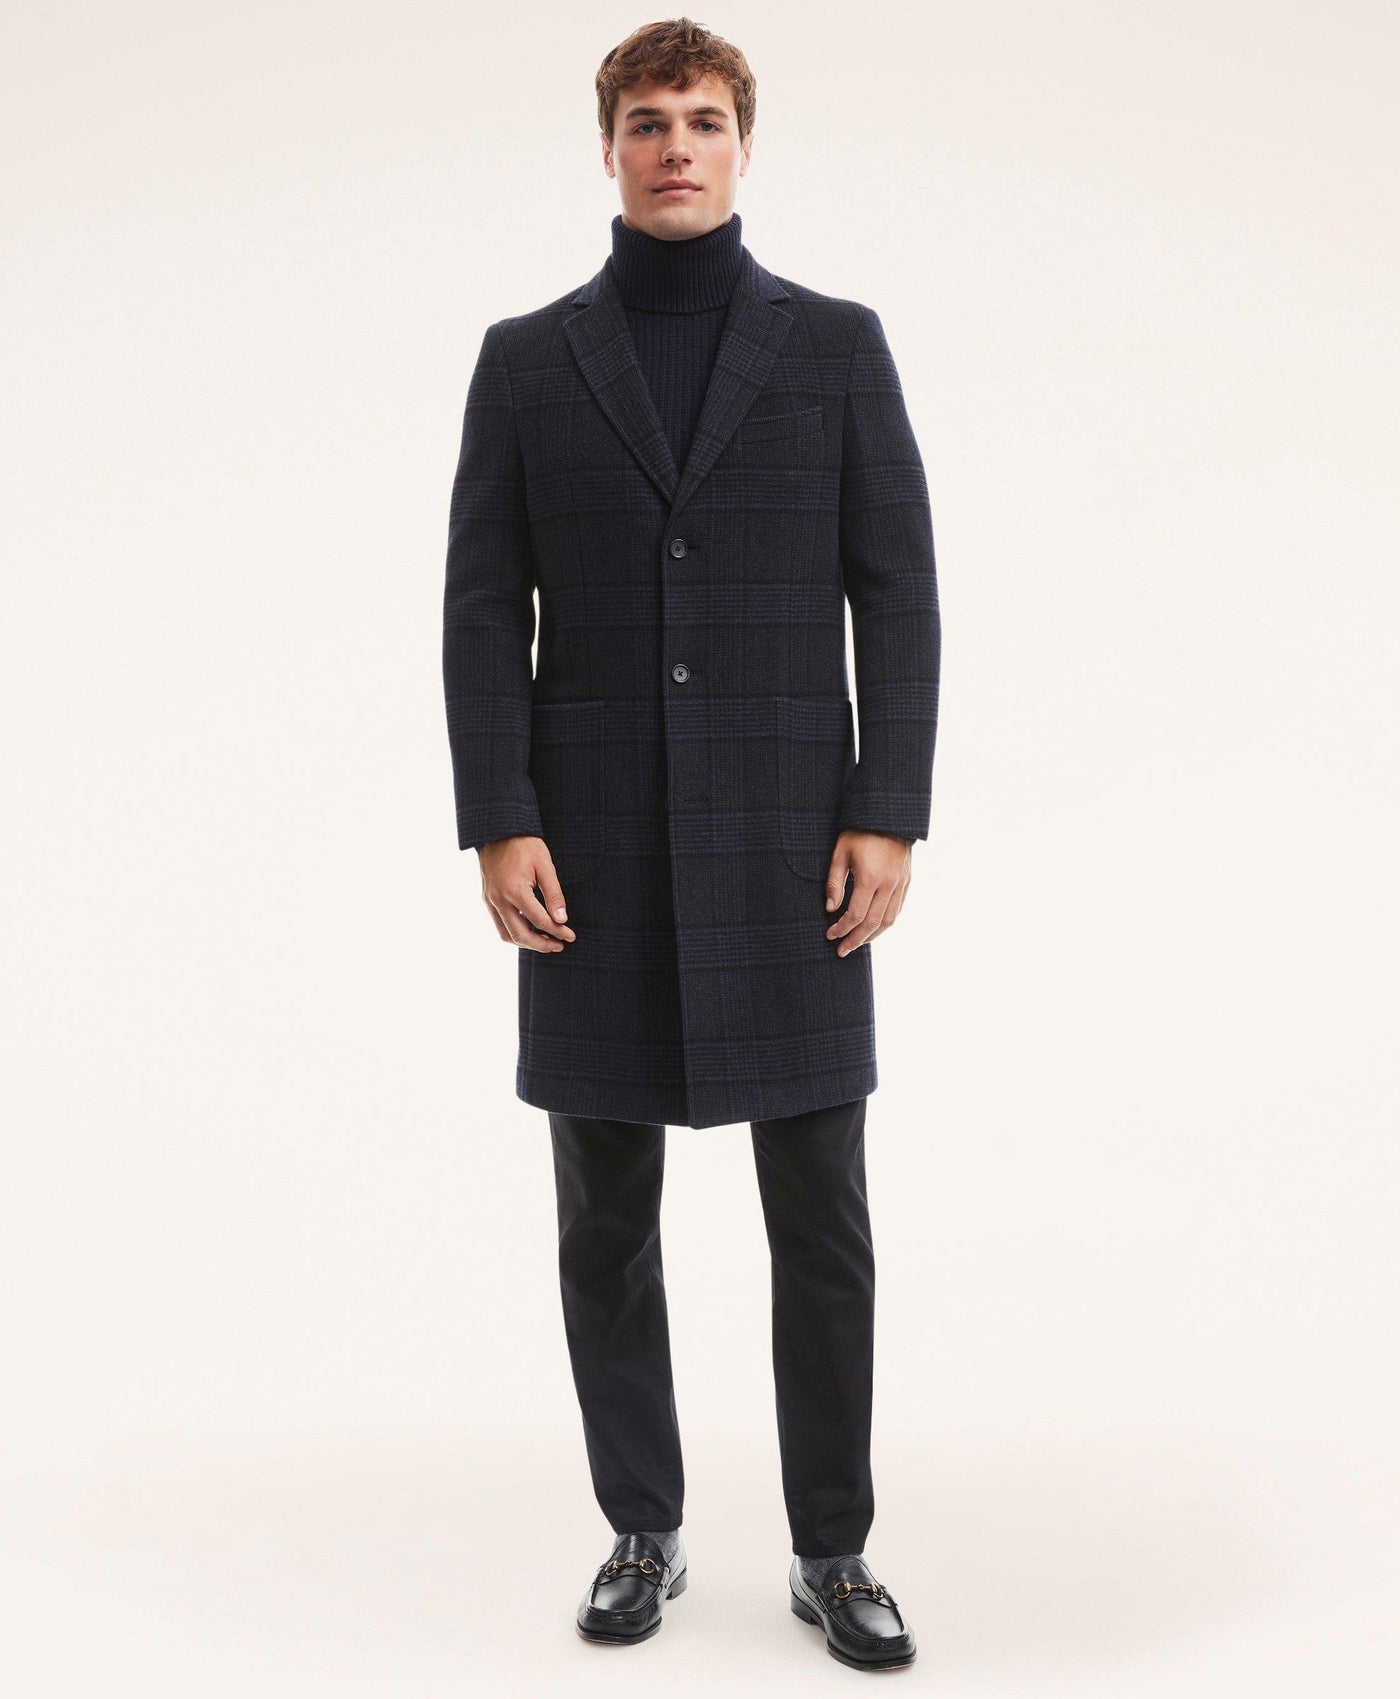 Wool Blend Glen Plaid Top Coat